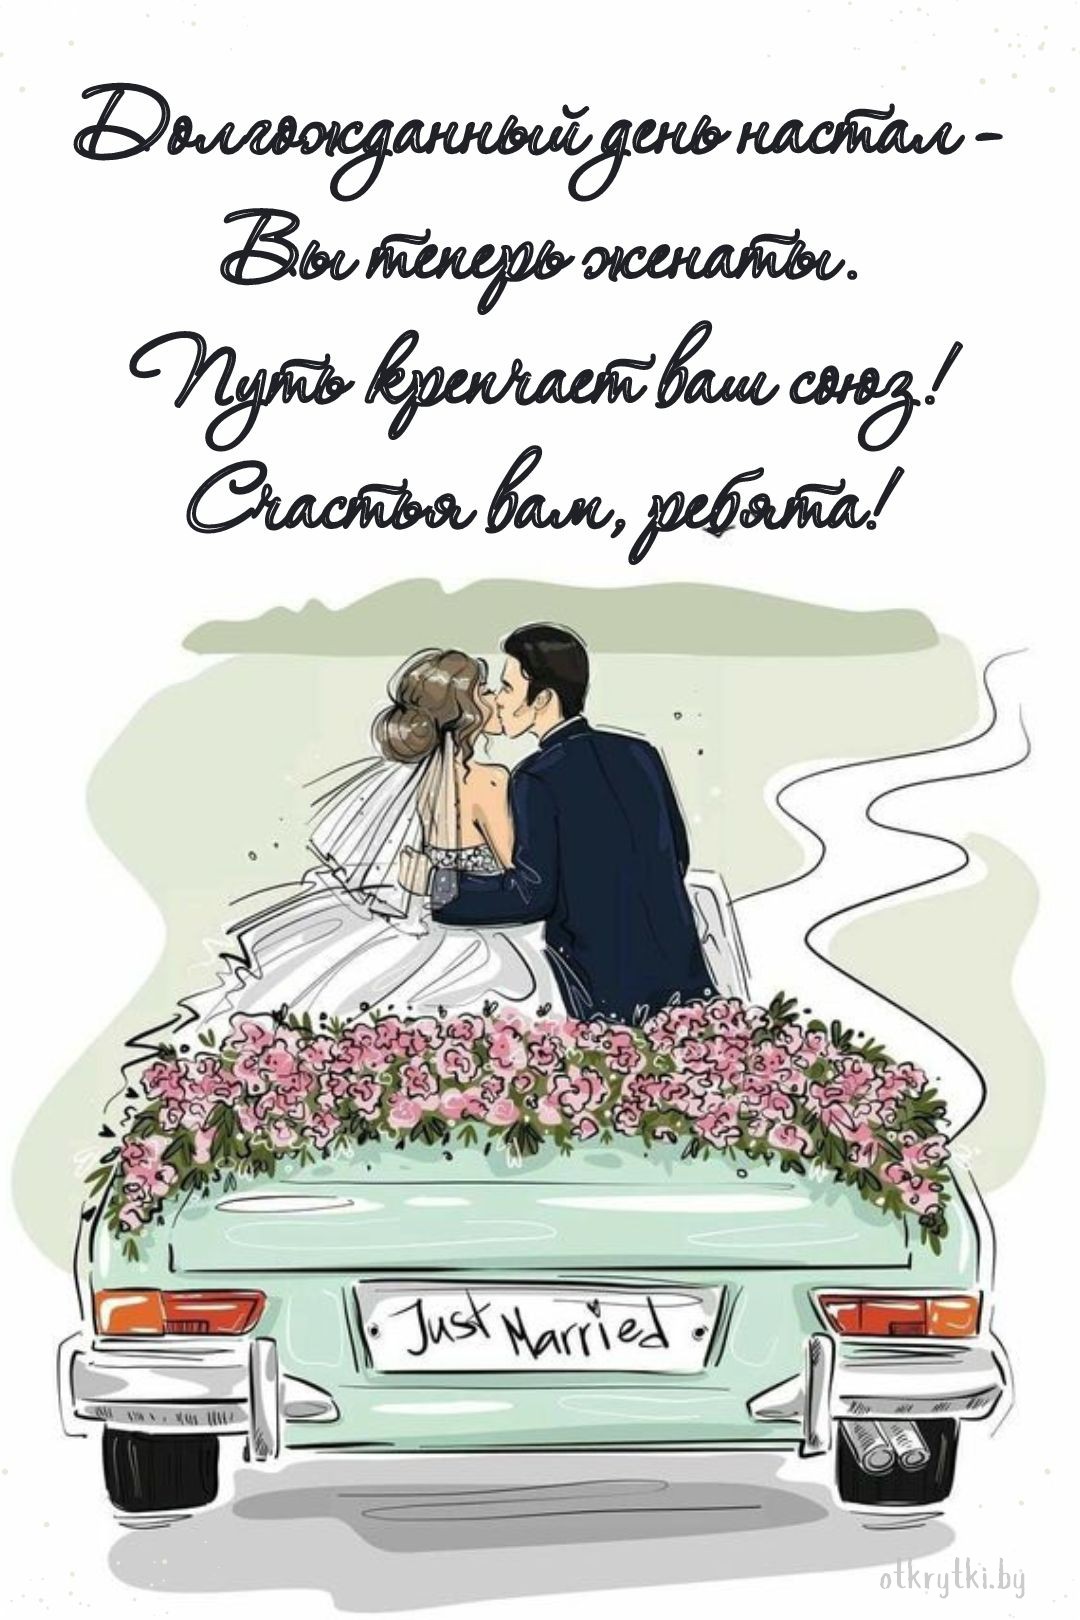 Виртуальная открытка с поздравлением со свадьбой